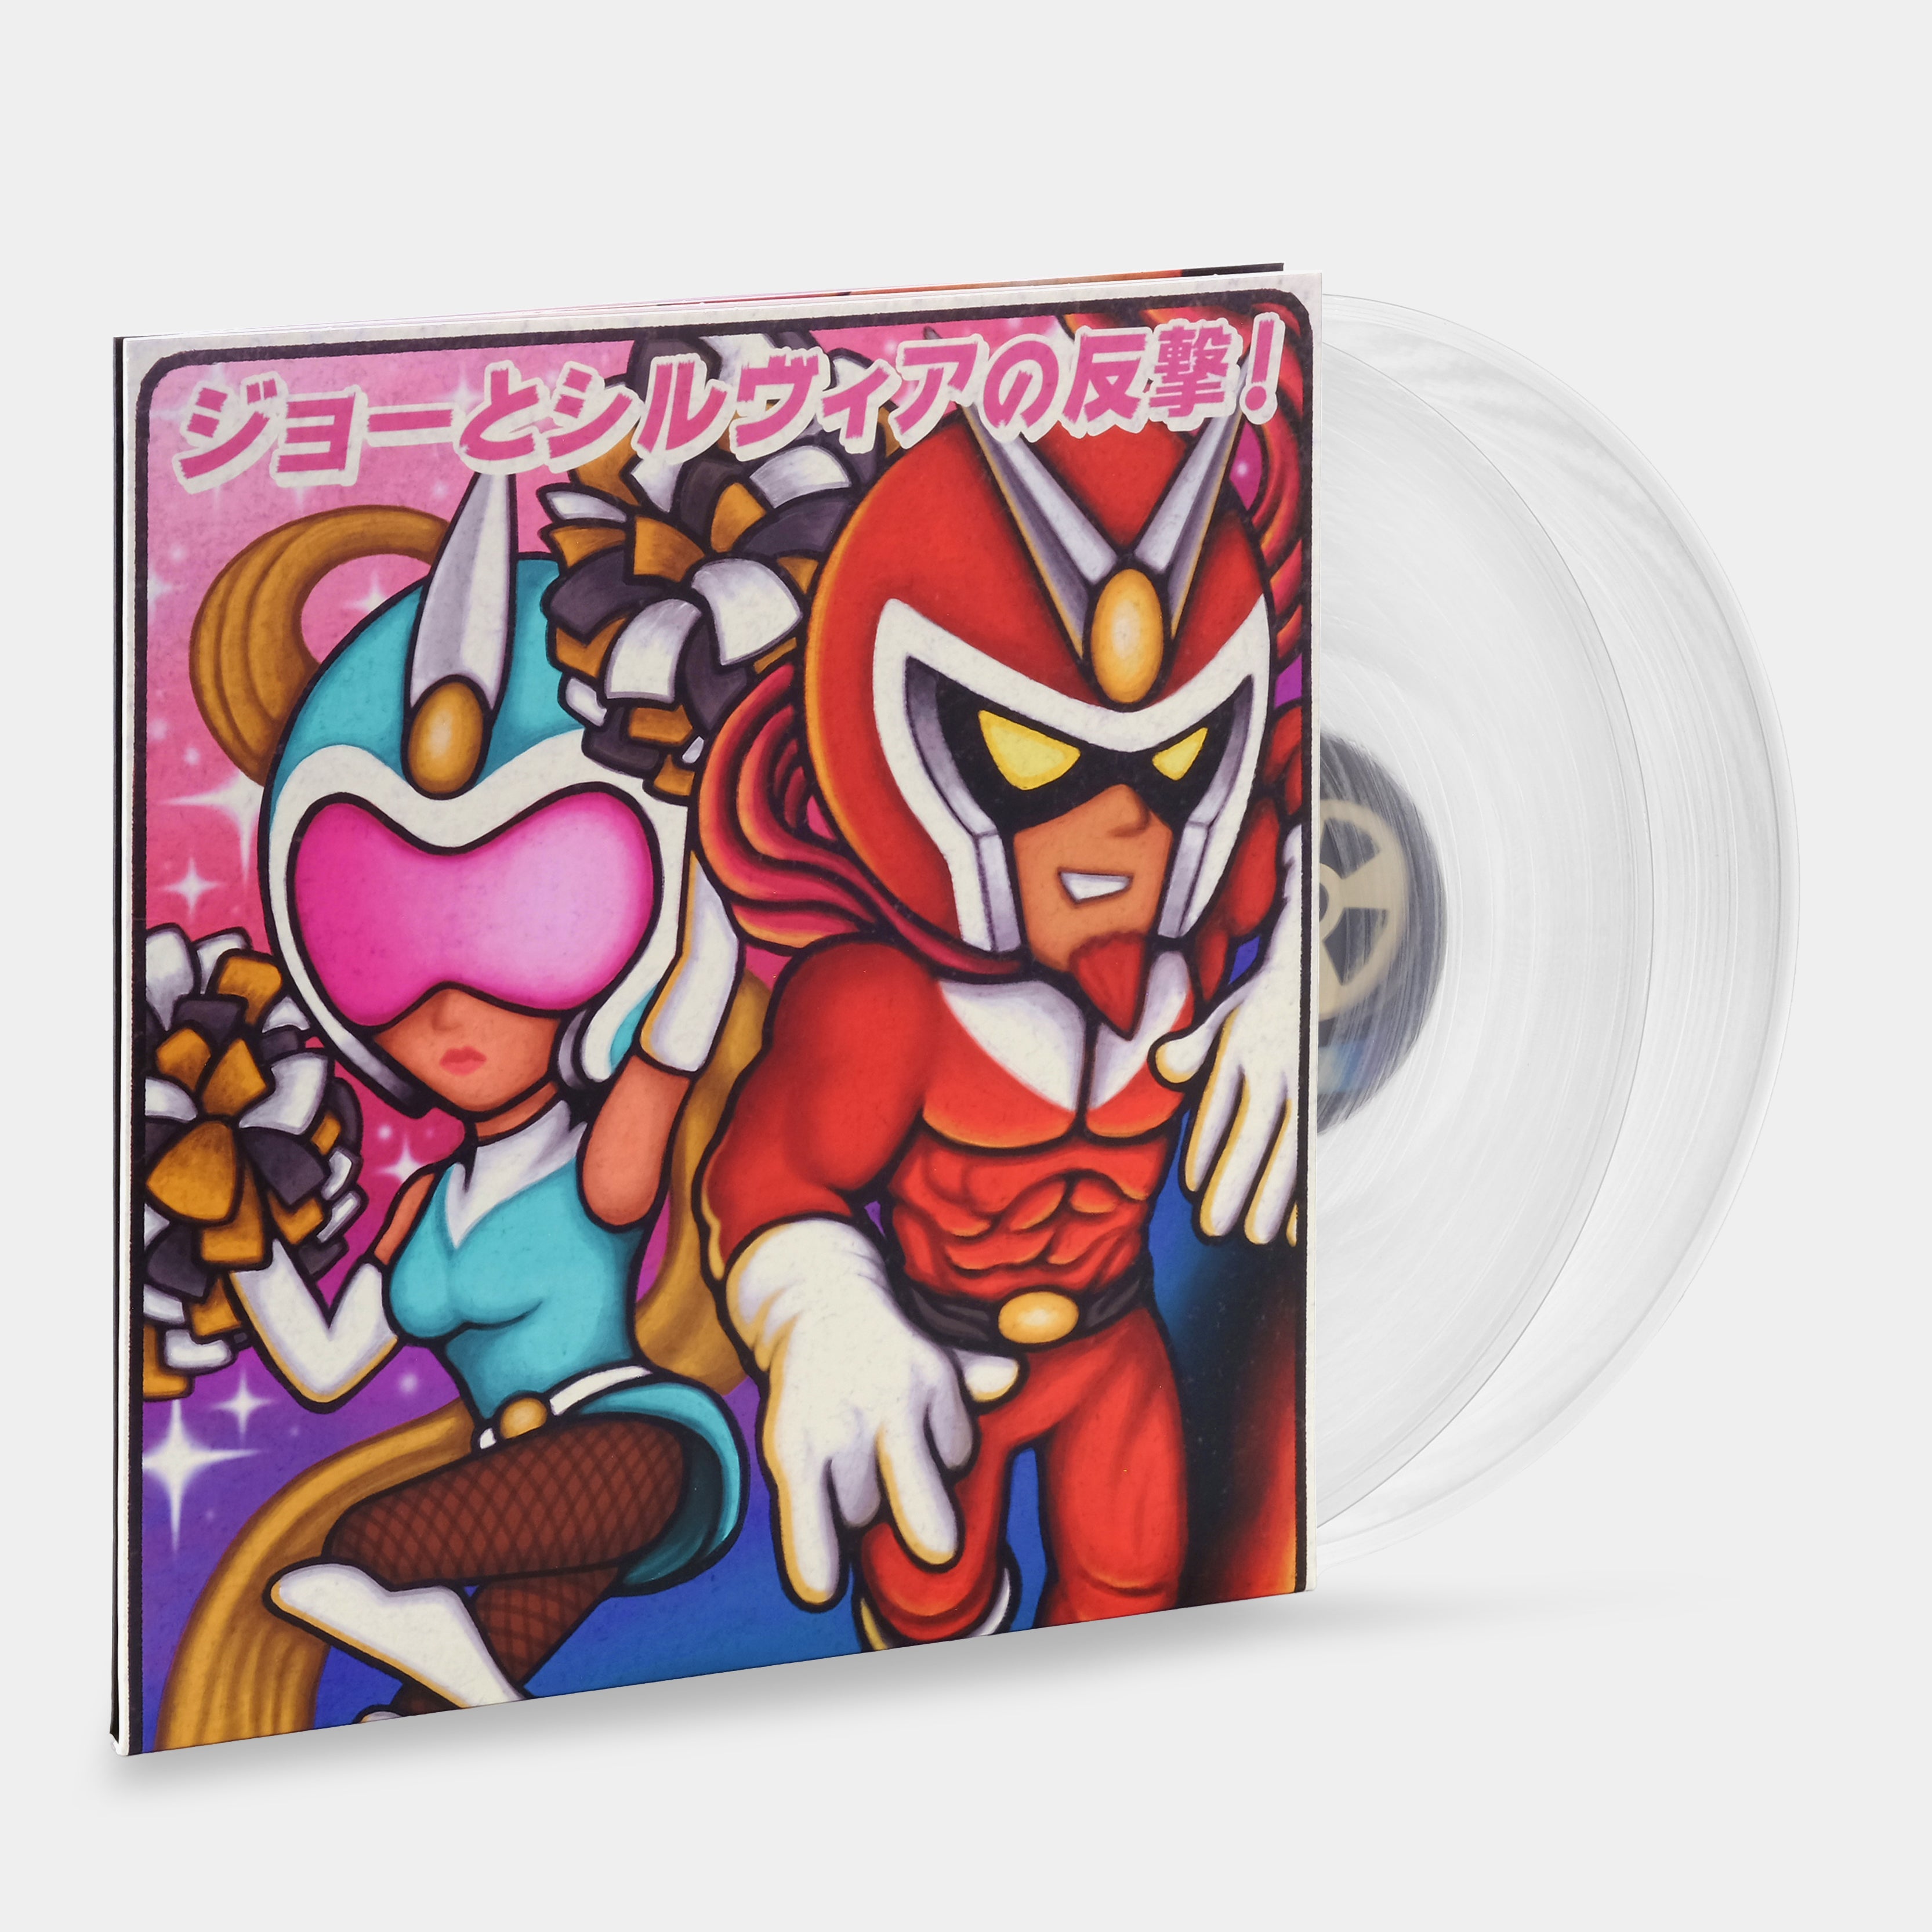 Sayaka Morita & Masami Ueda - Viewtiful Joe 2 (Original Video Game Soundtrack) 2xLP Clear Vinyl Record